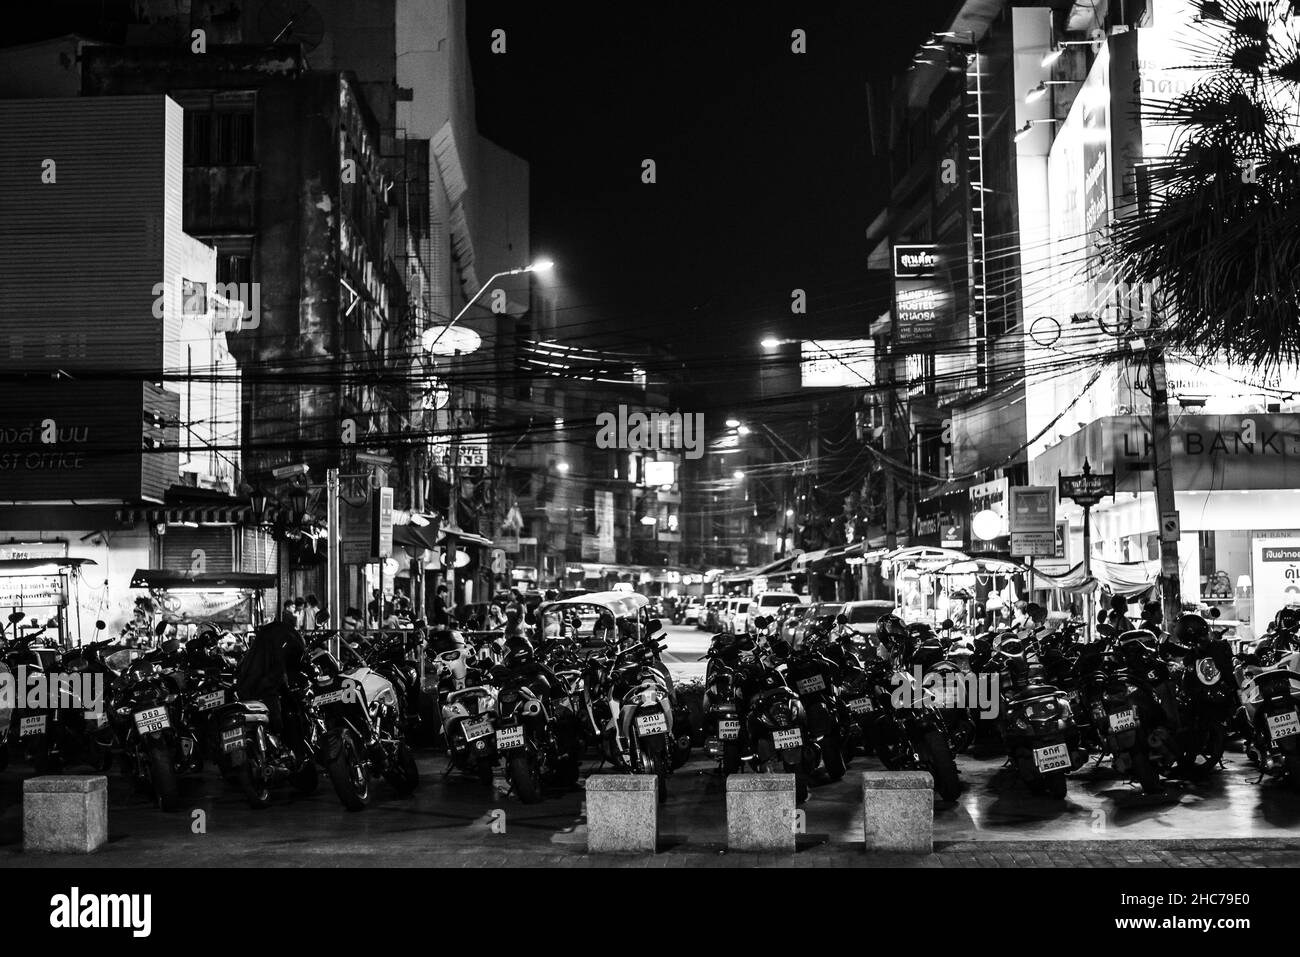 Prise de vue en niveaux de gris de scooters dans la rue la nuit à Bangkok, en Thaïlande Banque D'Images